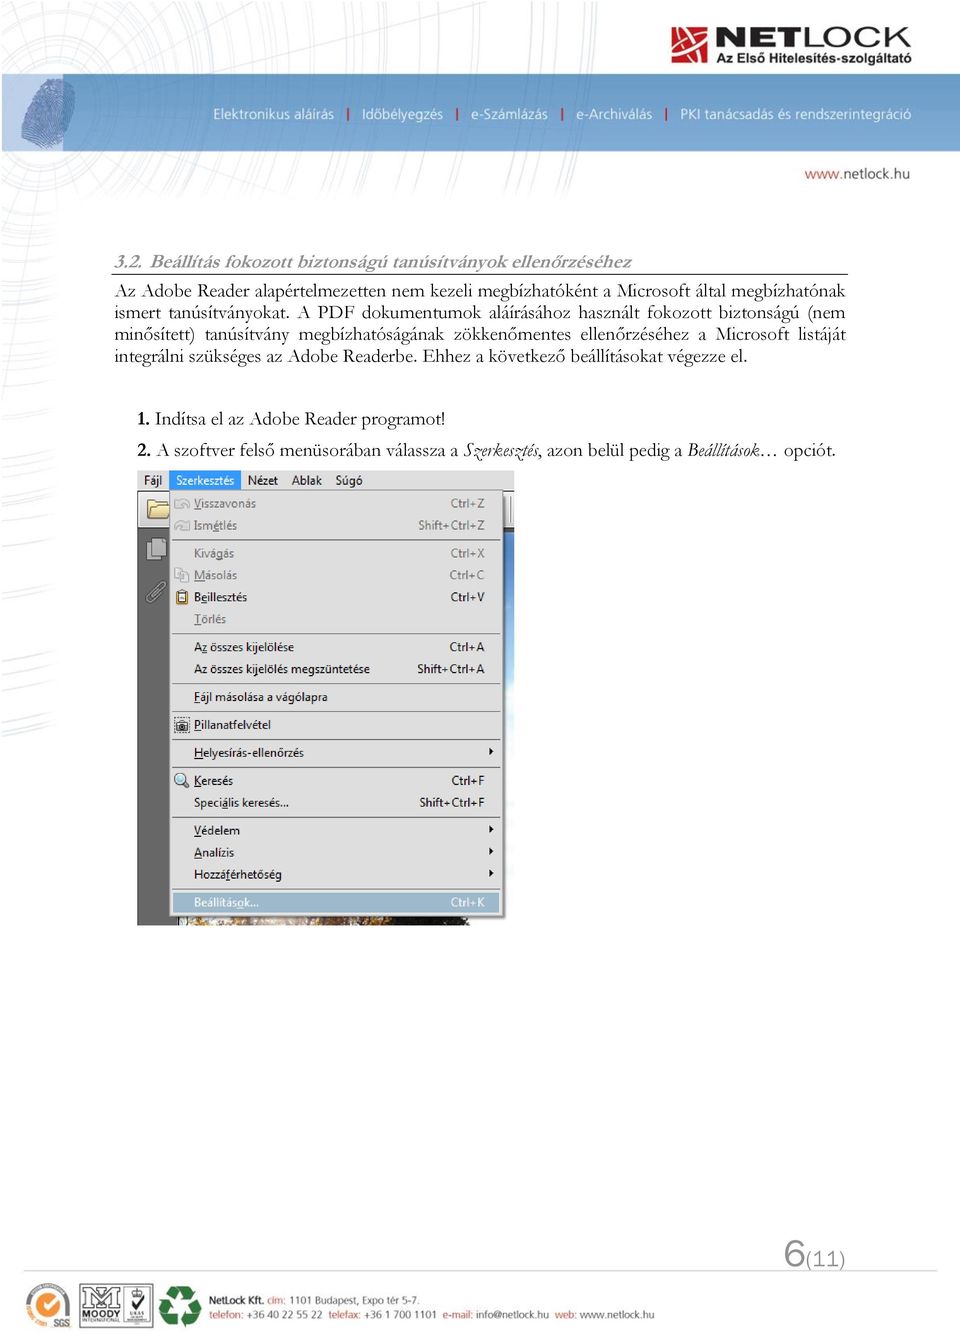 A PDF dokumentumok aláírásához használt fokozott biztonságú (nem minősített) tanúsítvány megbízhatóságának zökkenőmentes ellenőrzéséhez a